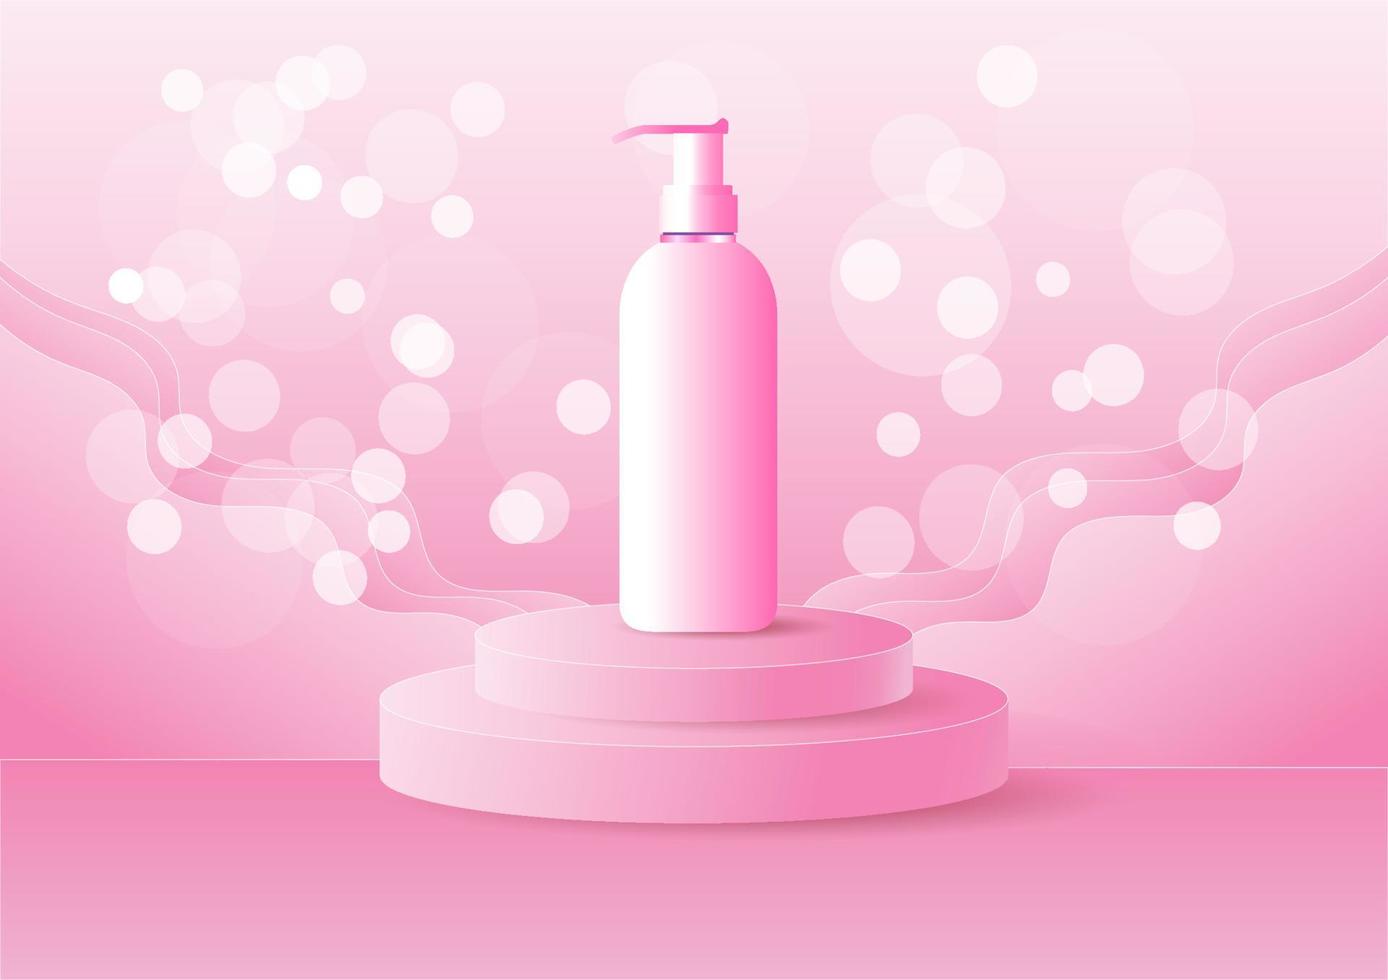 Kosmetik-Werbevorlage in rosafarbenem Thema, weiches Produktmodell, es ist eine Pfeife auf einer runden Plattform. flache Vektorillustration vektor